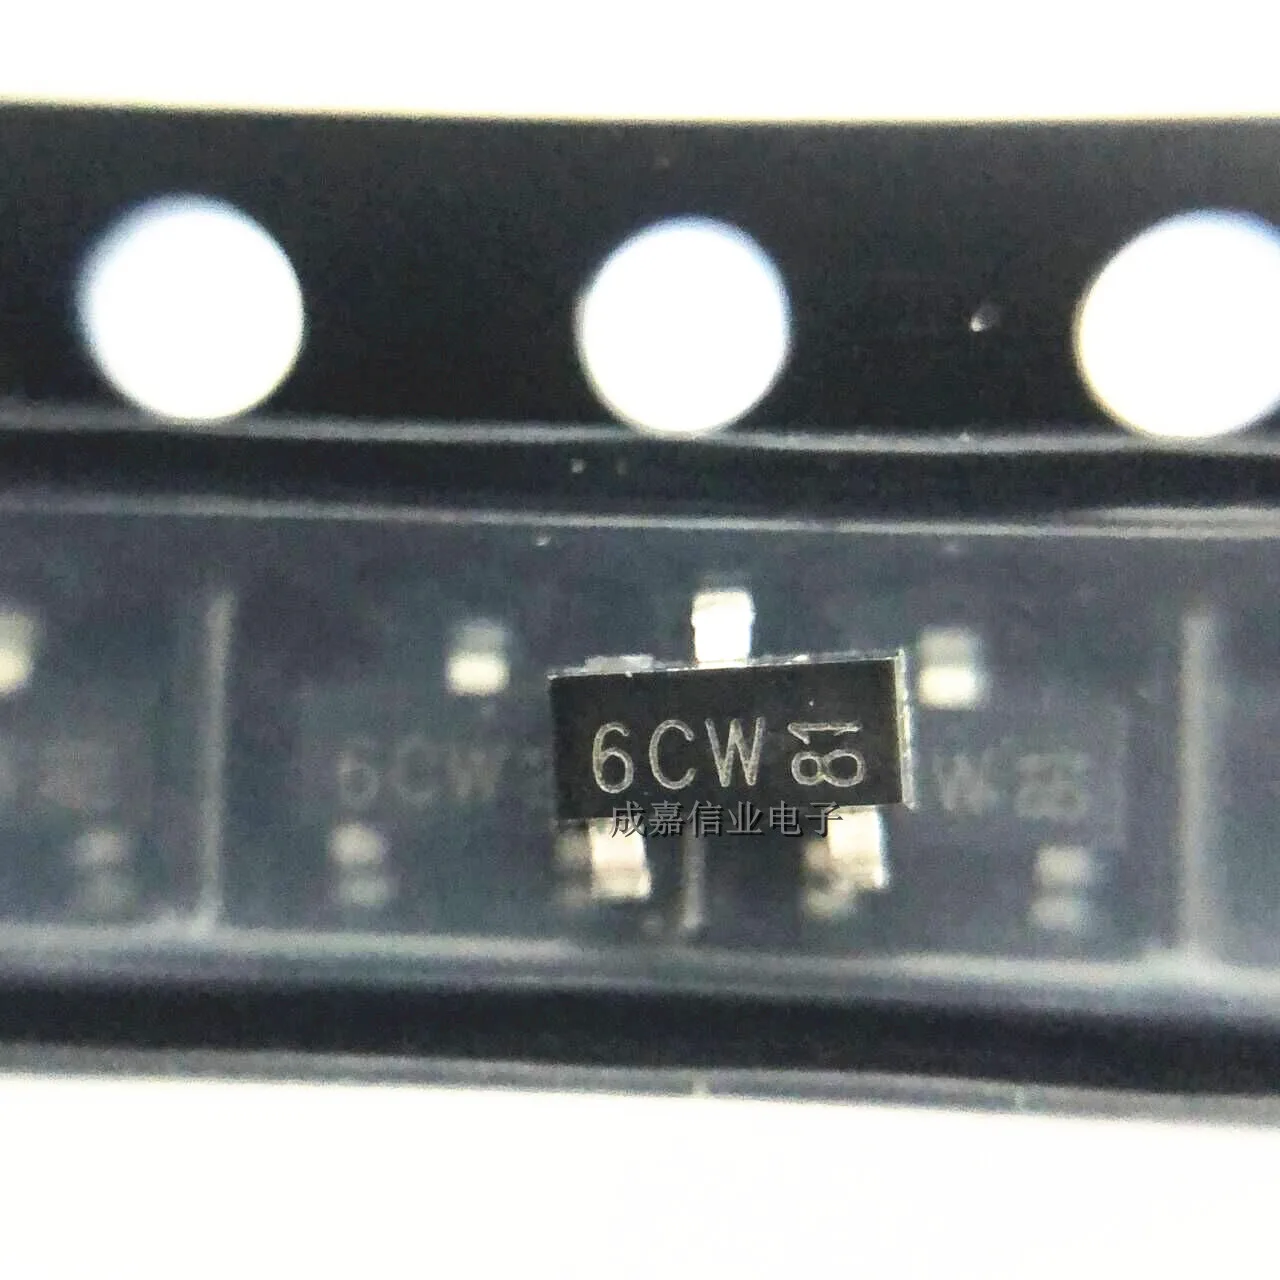 

100pcs/Lot BC817-40 SOT-23-3 MARKING;6CW Bipolar Transistors - BJT Trans GP BJT NPN 45V 0.5A 345mW Automotive 3-Pin